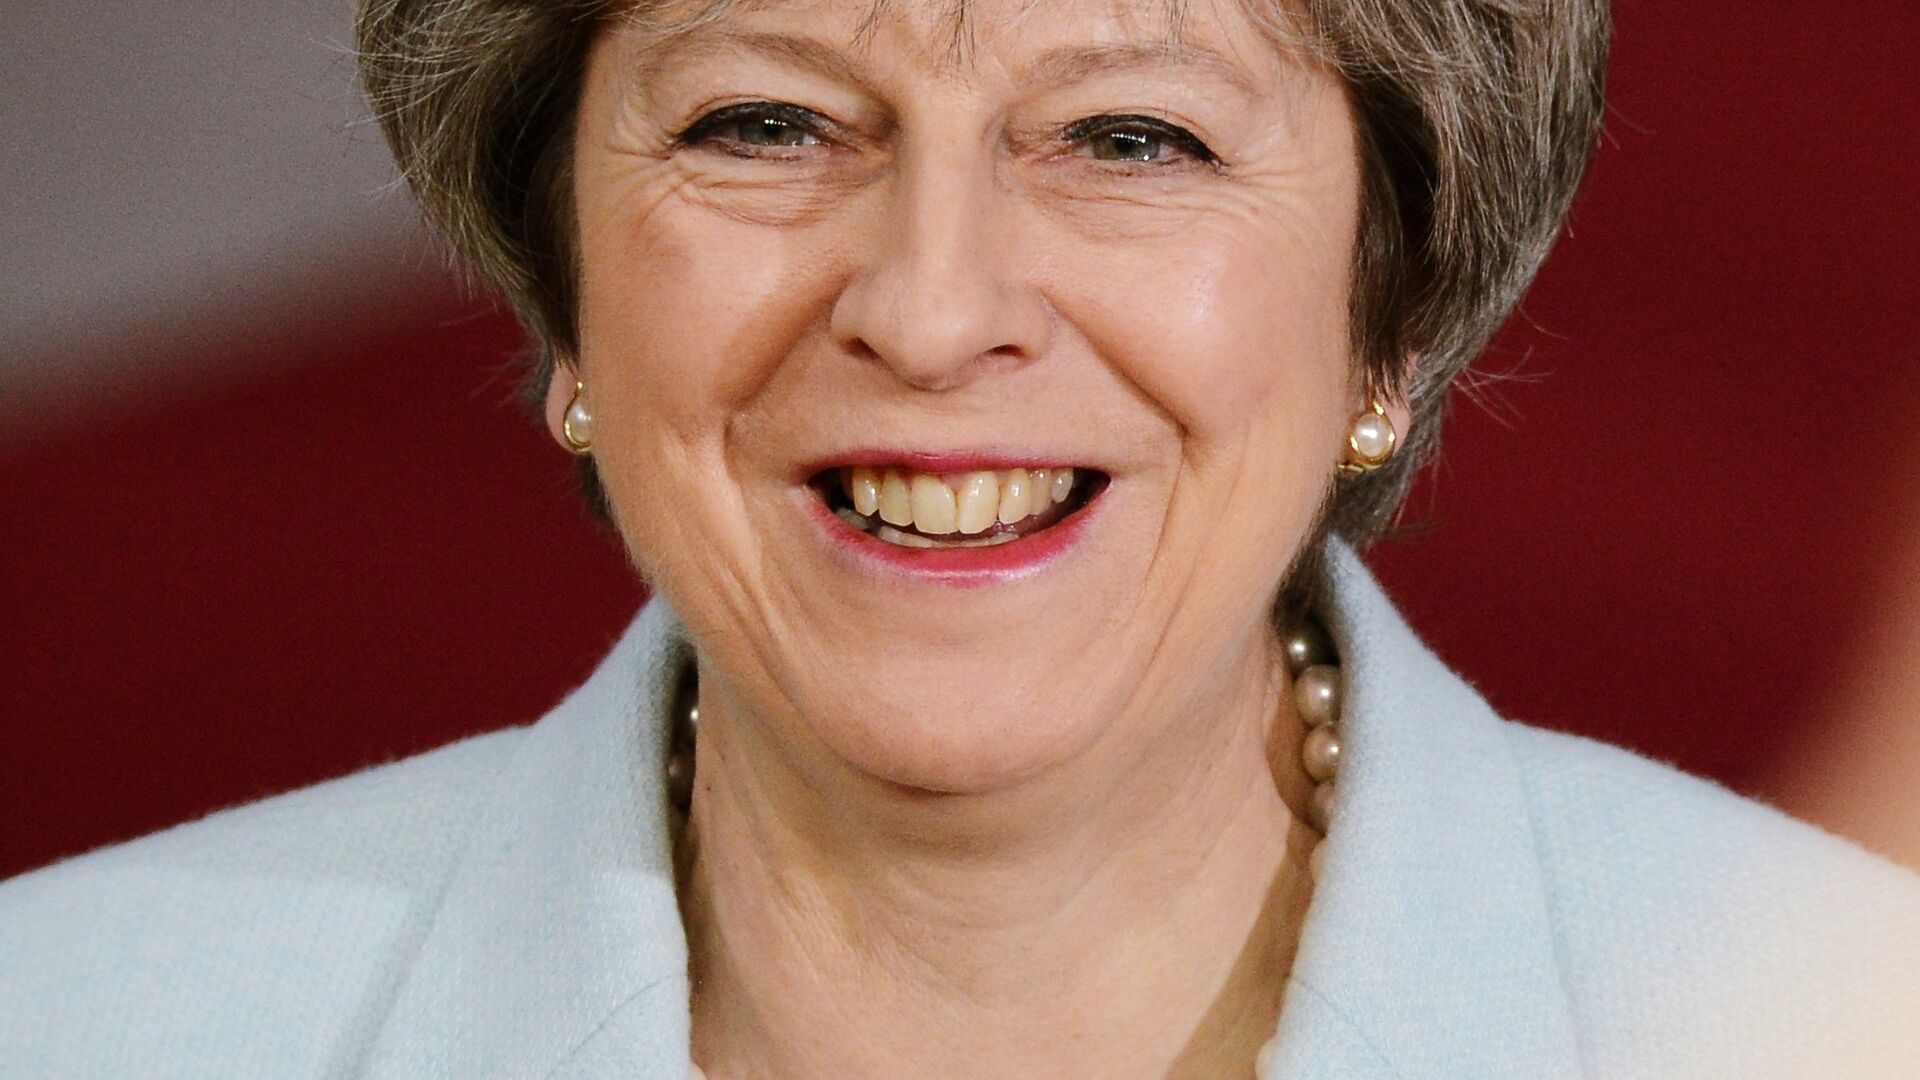 Премьер-министр Великобритании Тереза Мэй перед началом 5-го Саммита Восточного партнерства в Брюсселе. 24 ноября 2017 - РИА Новости, 1920, 15.07.2019